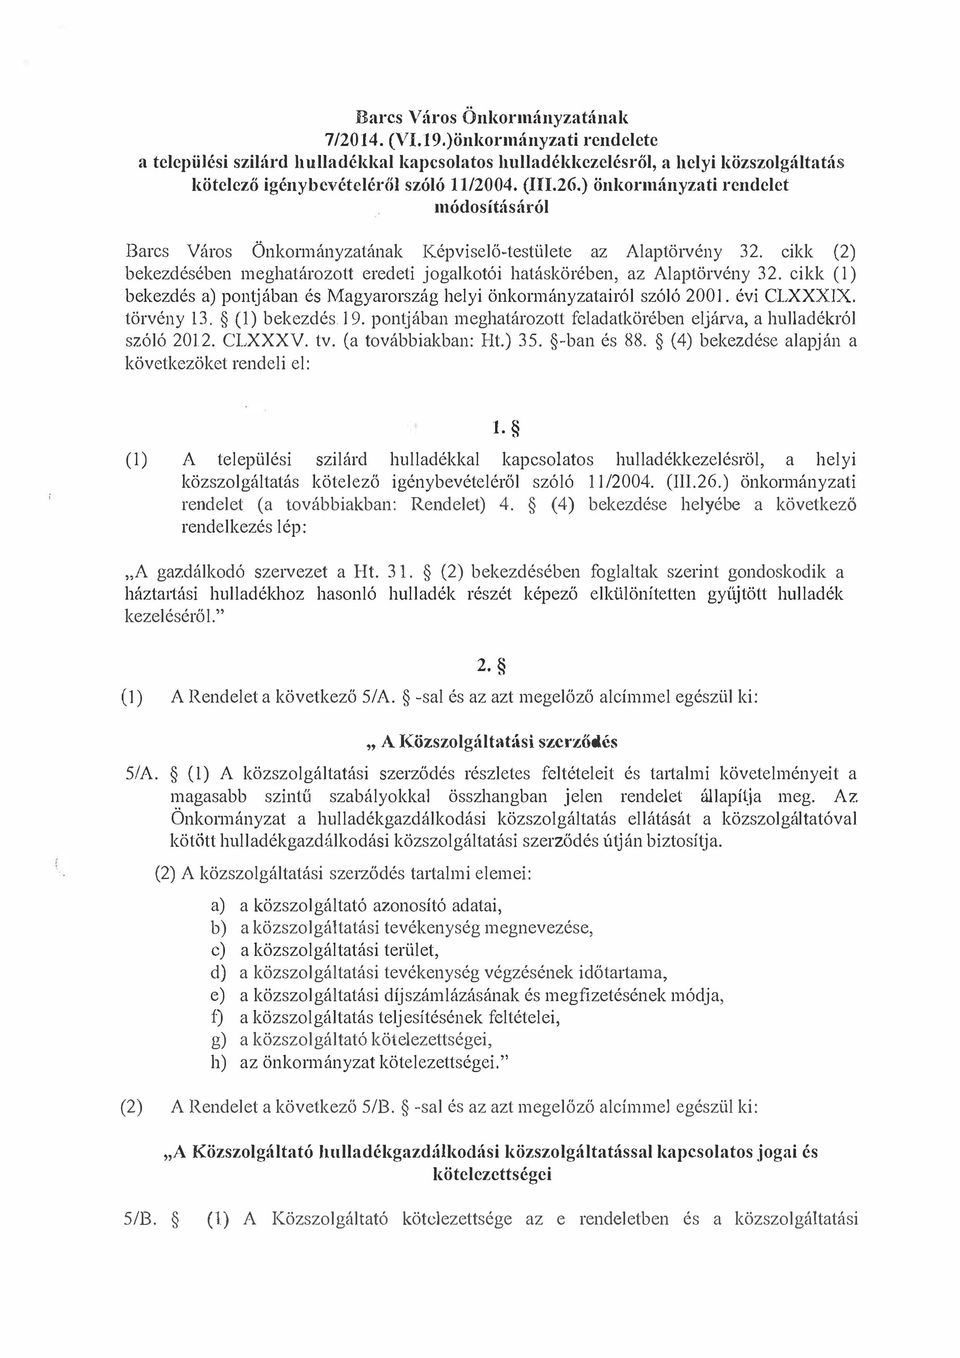 cikk (2) bekezdésében meghatározott eredeti jogalkotói hatáskörében, az Alaptörvény 32. cikk (1) bekezdés a) pontjában és Magyarország helyi önkormányzatairól szóló 2001. évi CLXXX1X. törvény 13.